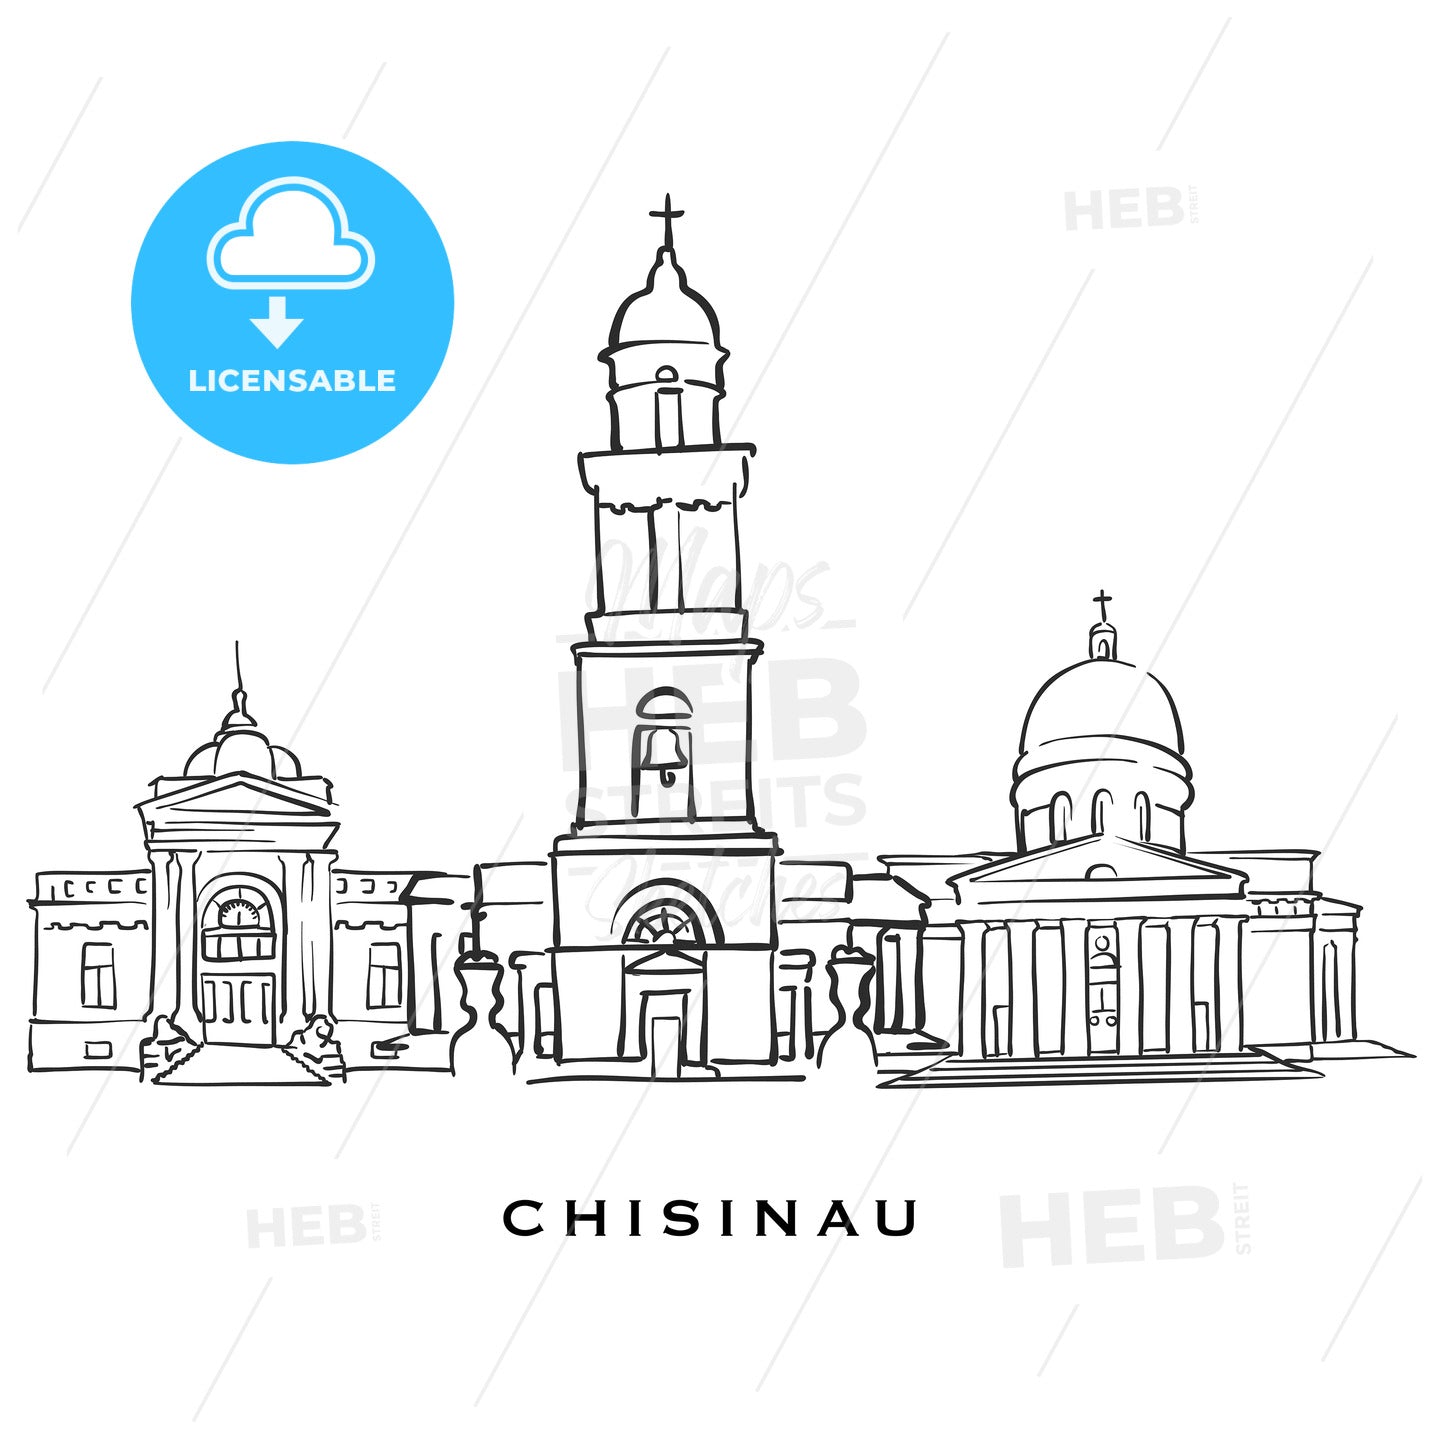 Chisinau Moldova famous architecture – instant download